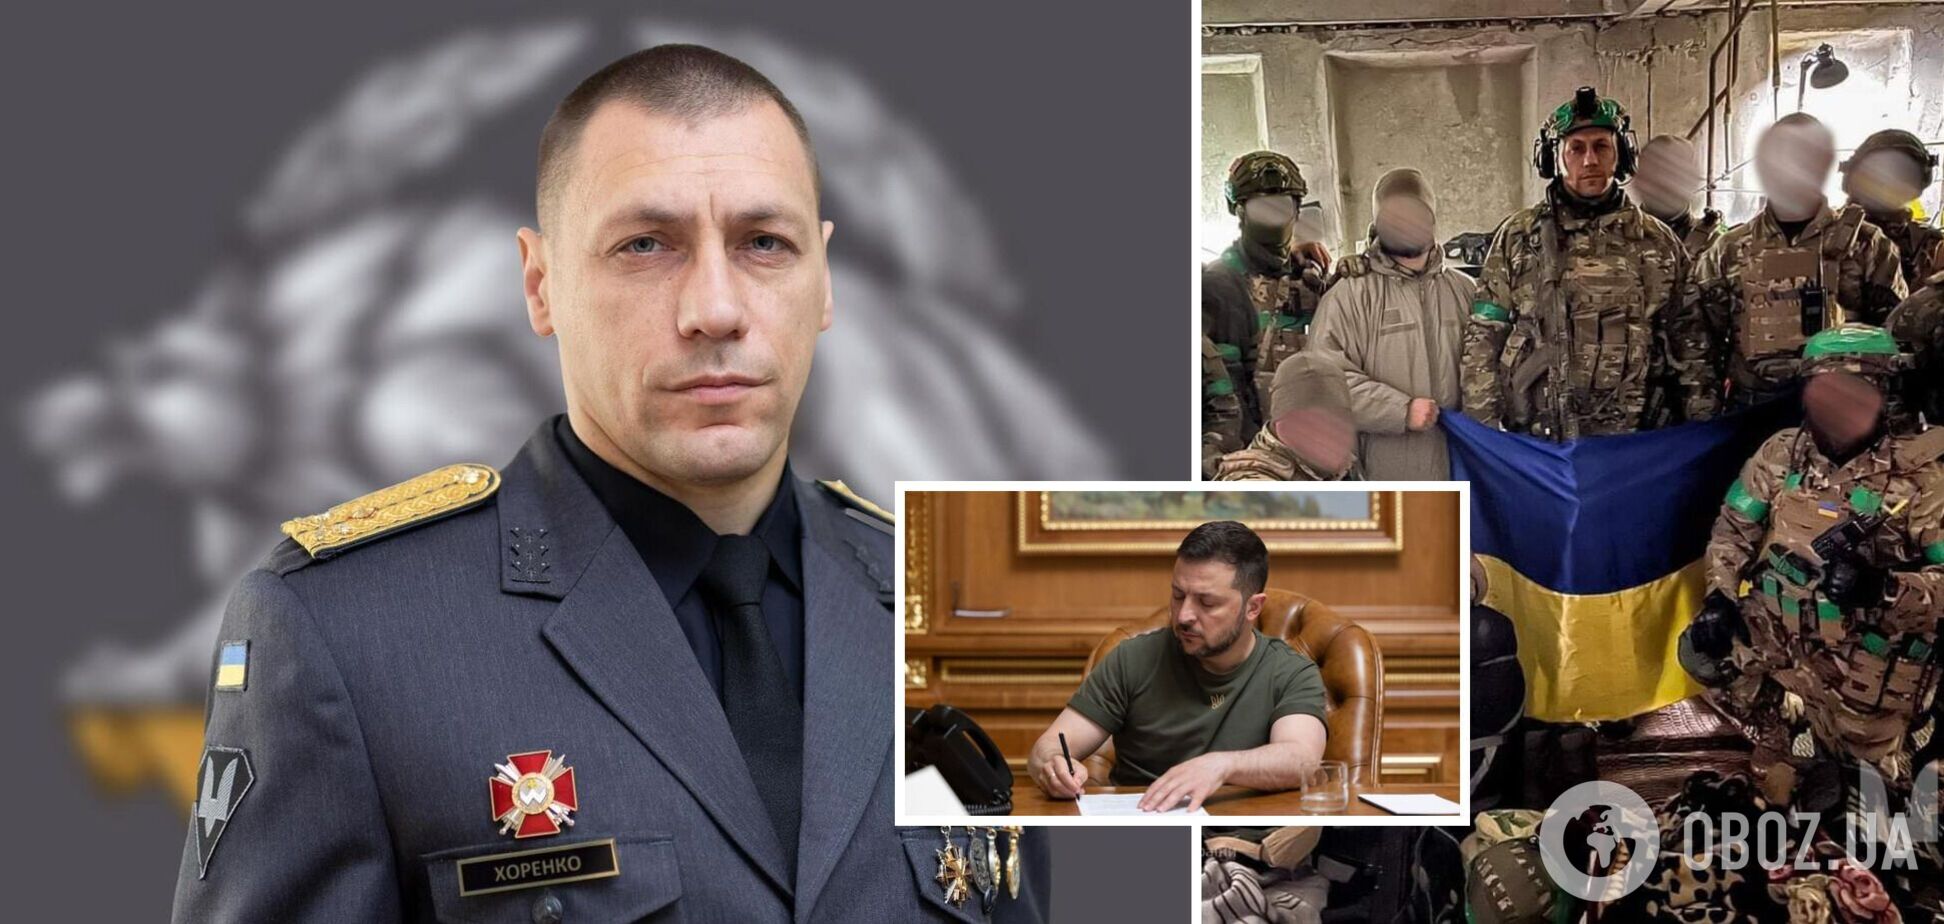 'Причины не знаю': командующий ССО Хоренко утверждает, что узнал о своем увольнении из СМИ